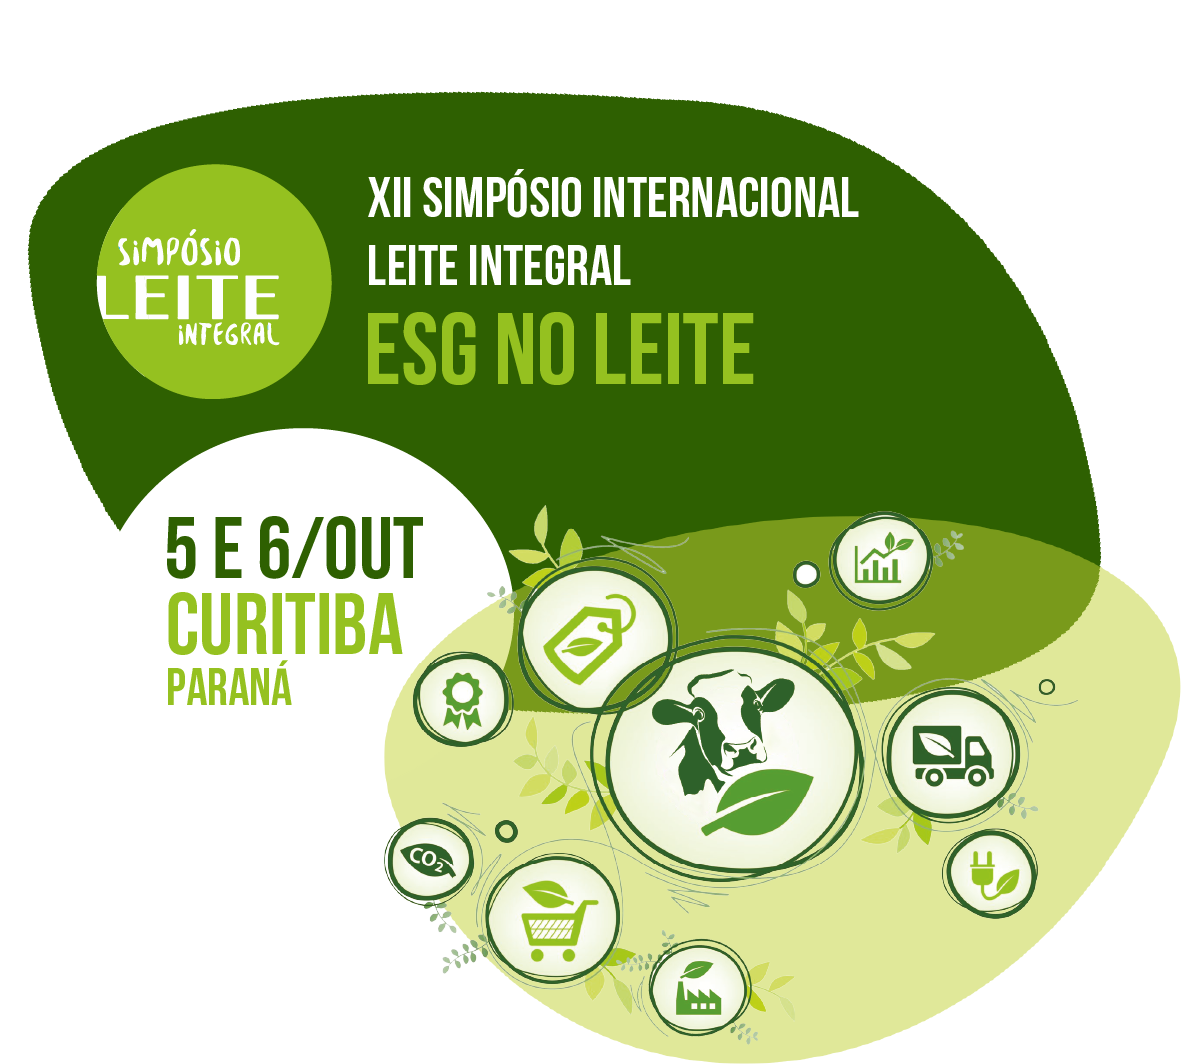 XII Simpósio Leite Integral "ESG no Leite" - 5 e 6 de outubro em Curitiba, Paraná